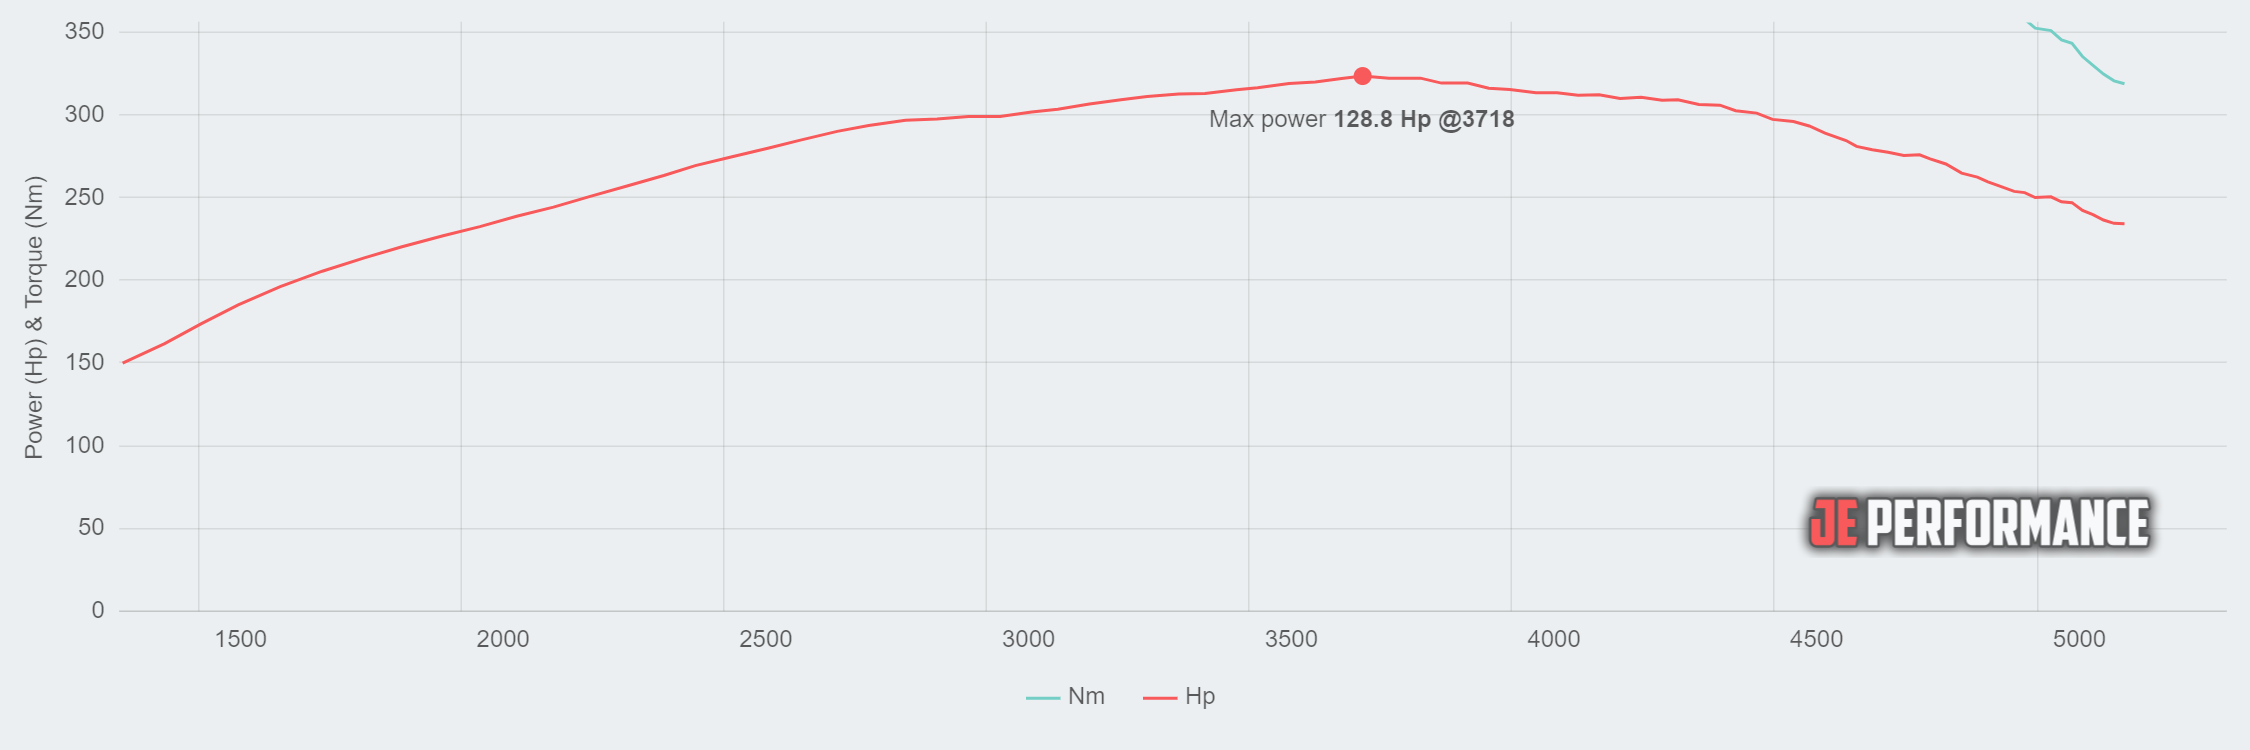 AMC Matador 94.73kW @ 3718 rpm / 331.86Nm @ 1657 rpm Dyno Graph